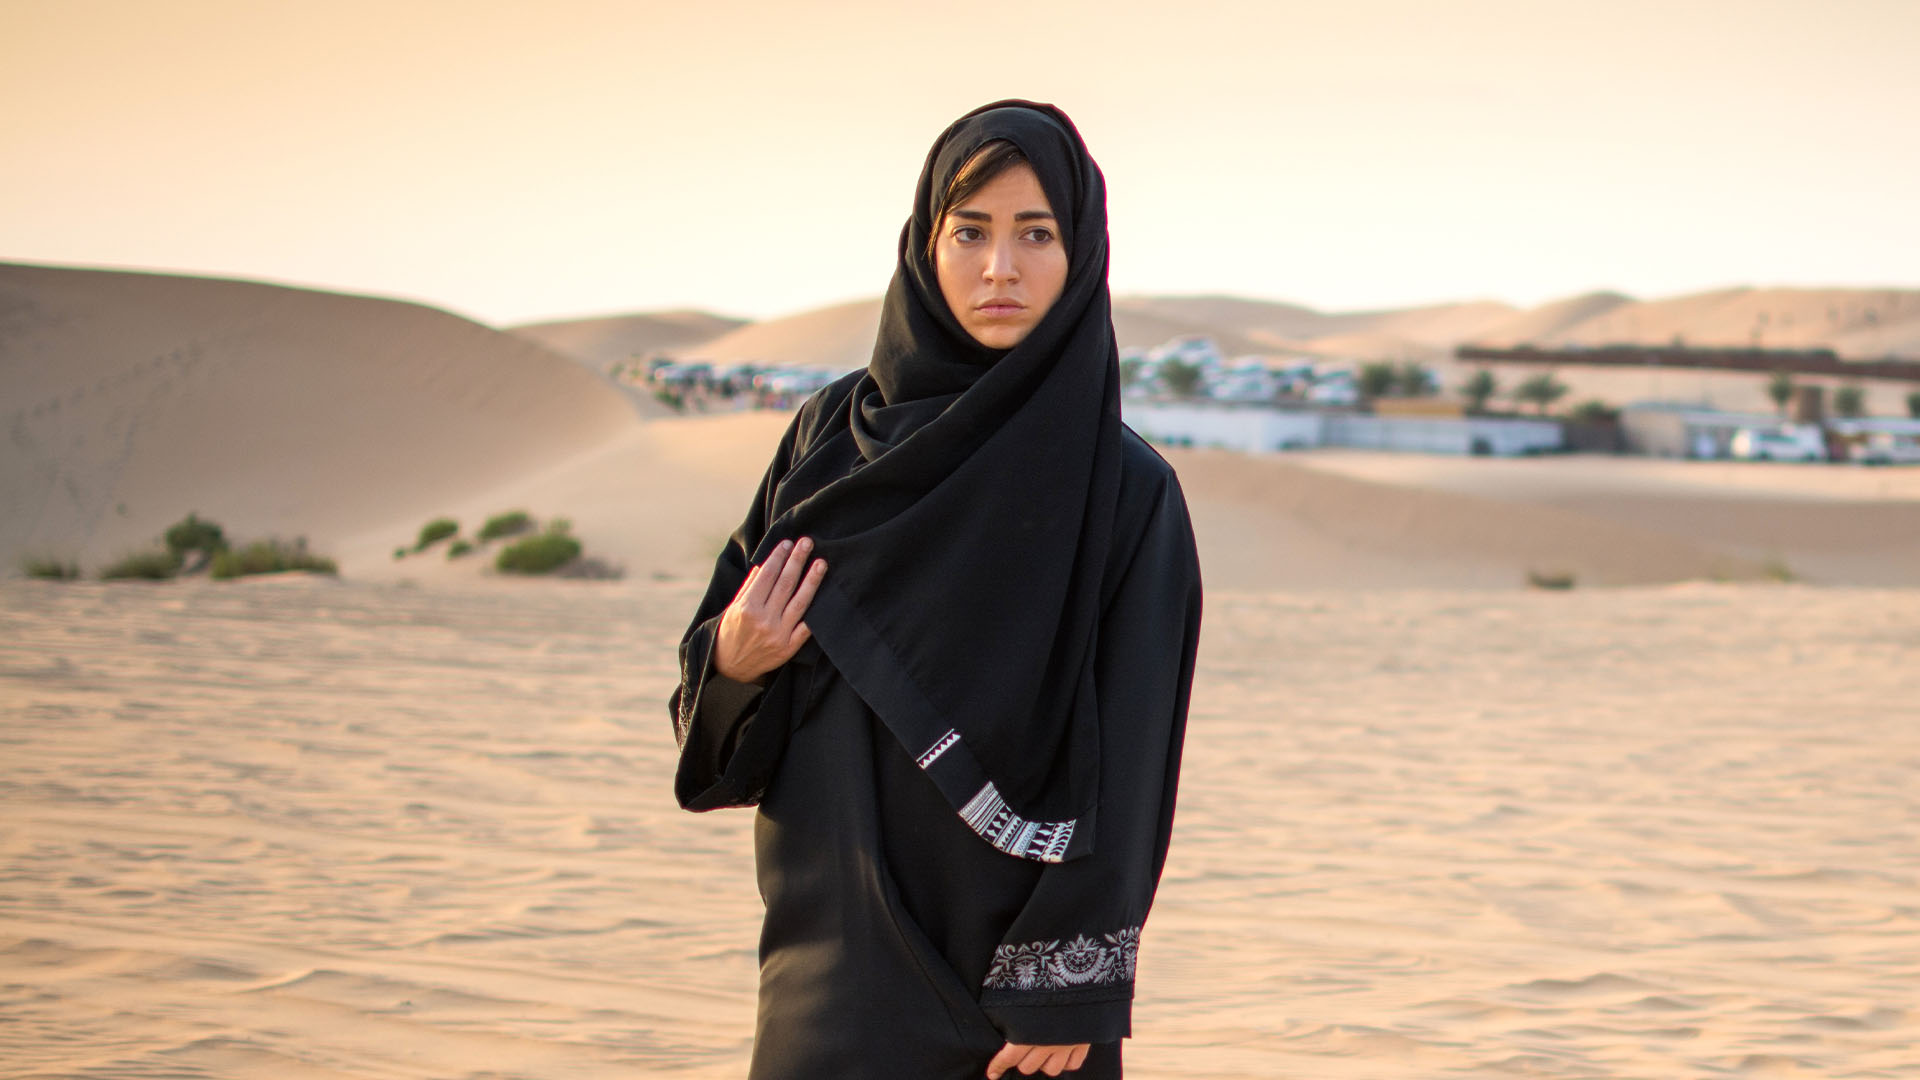 Arab woman walking in a desert